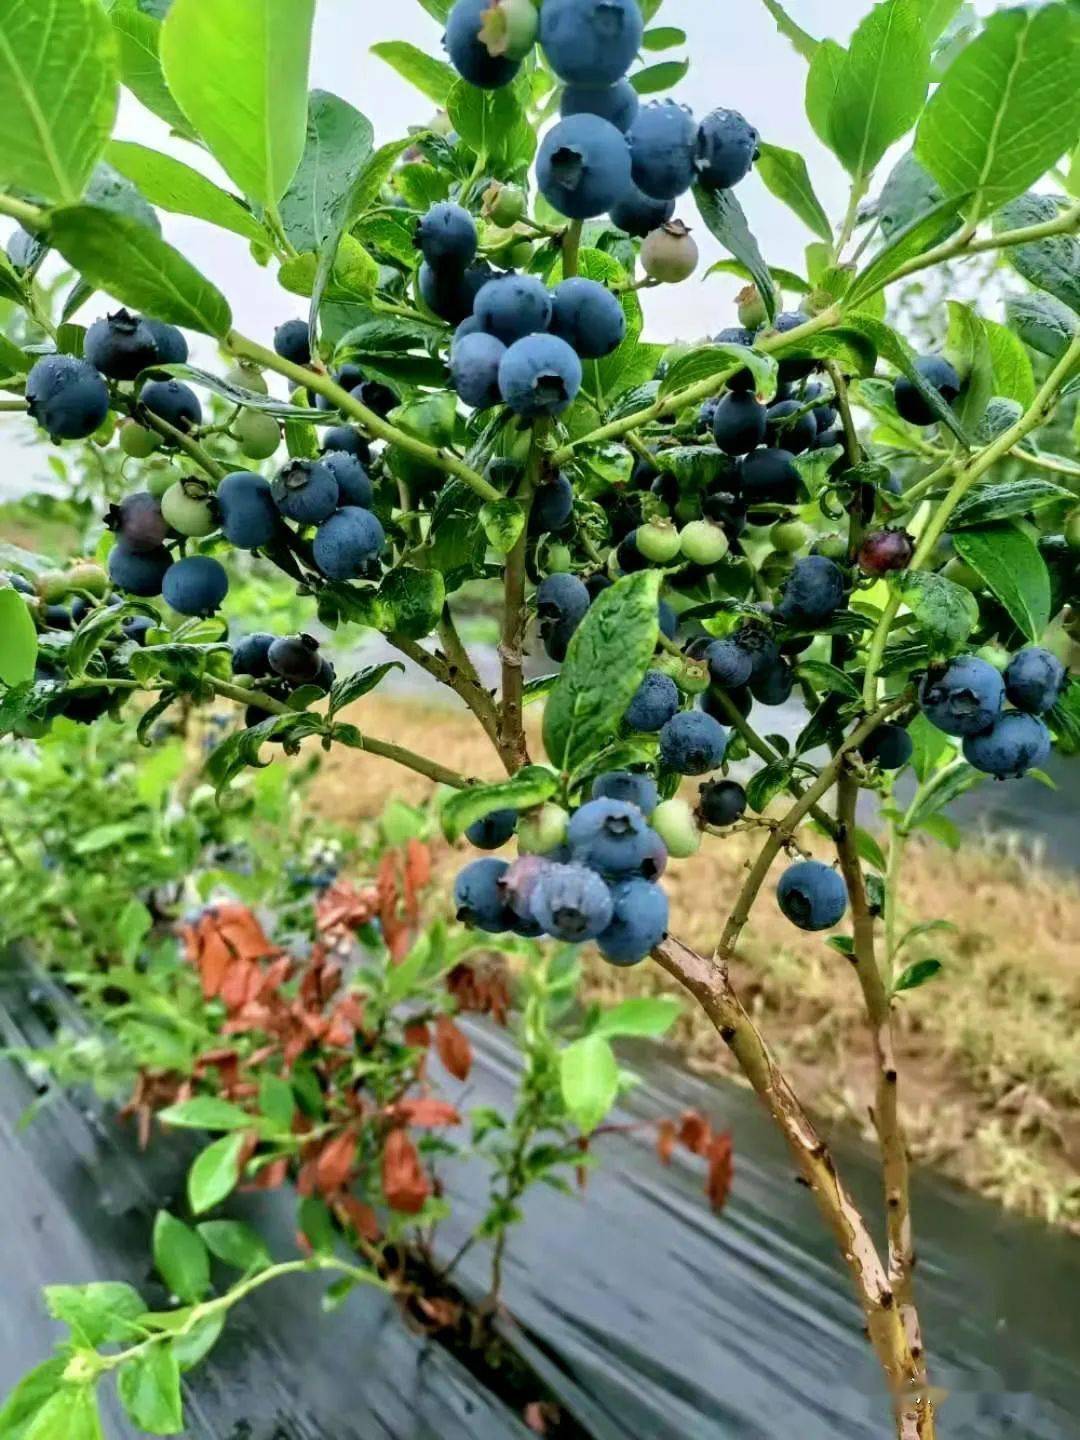 散发着阵阵的果香颗粒饱满,色泽诱人一颗颗蓝莓树上挂着一串串成熟的